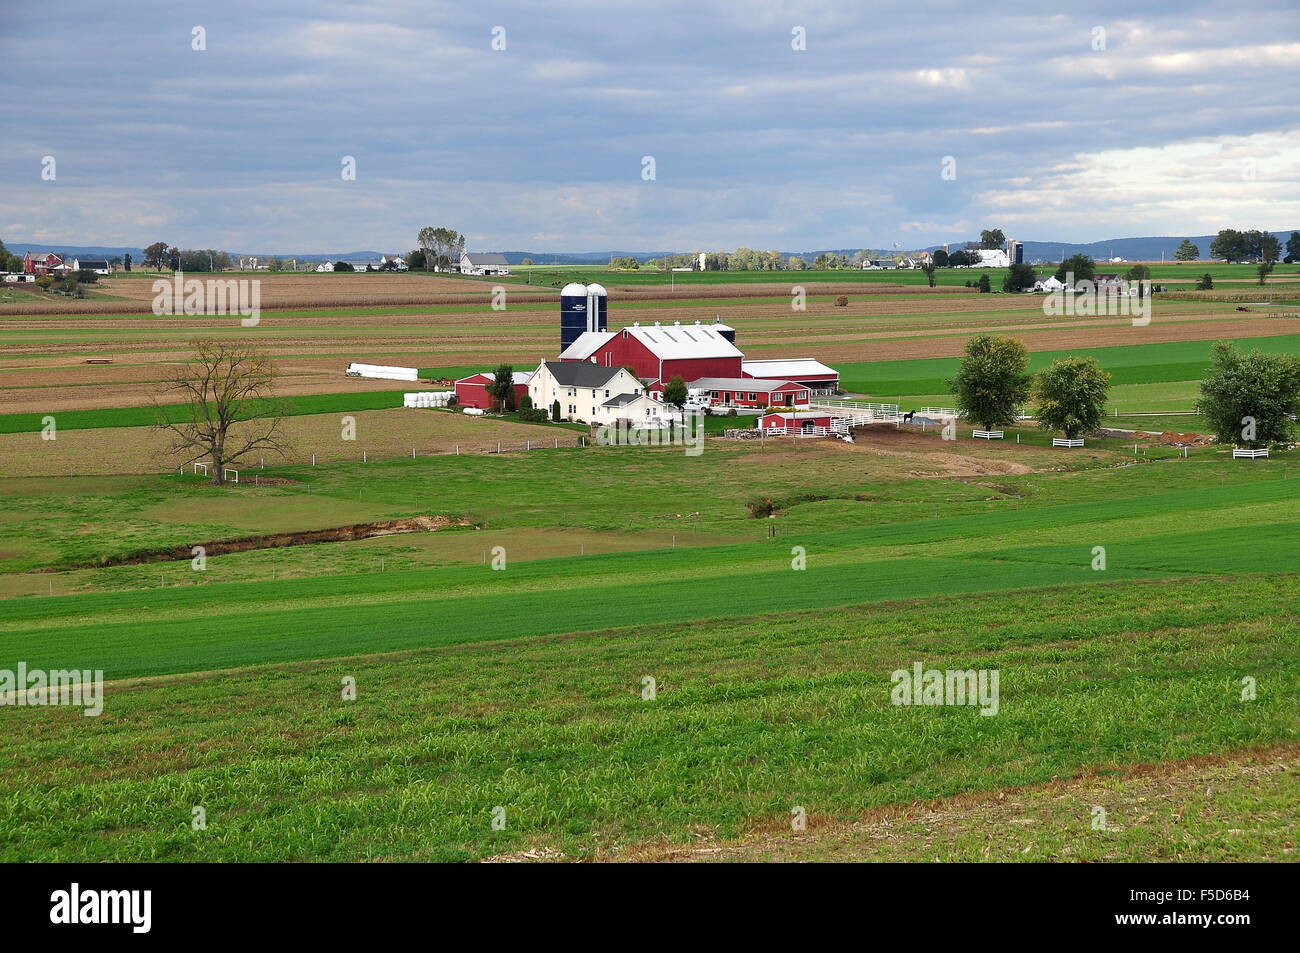 Lancaster County, Pennsylvania: Eine große Amish Landwirtschaft mit Bauernhaus, Scheunen und Silos, umgeben von Ackerland Stockfoto